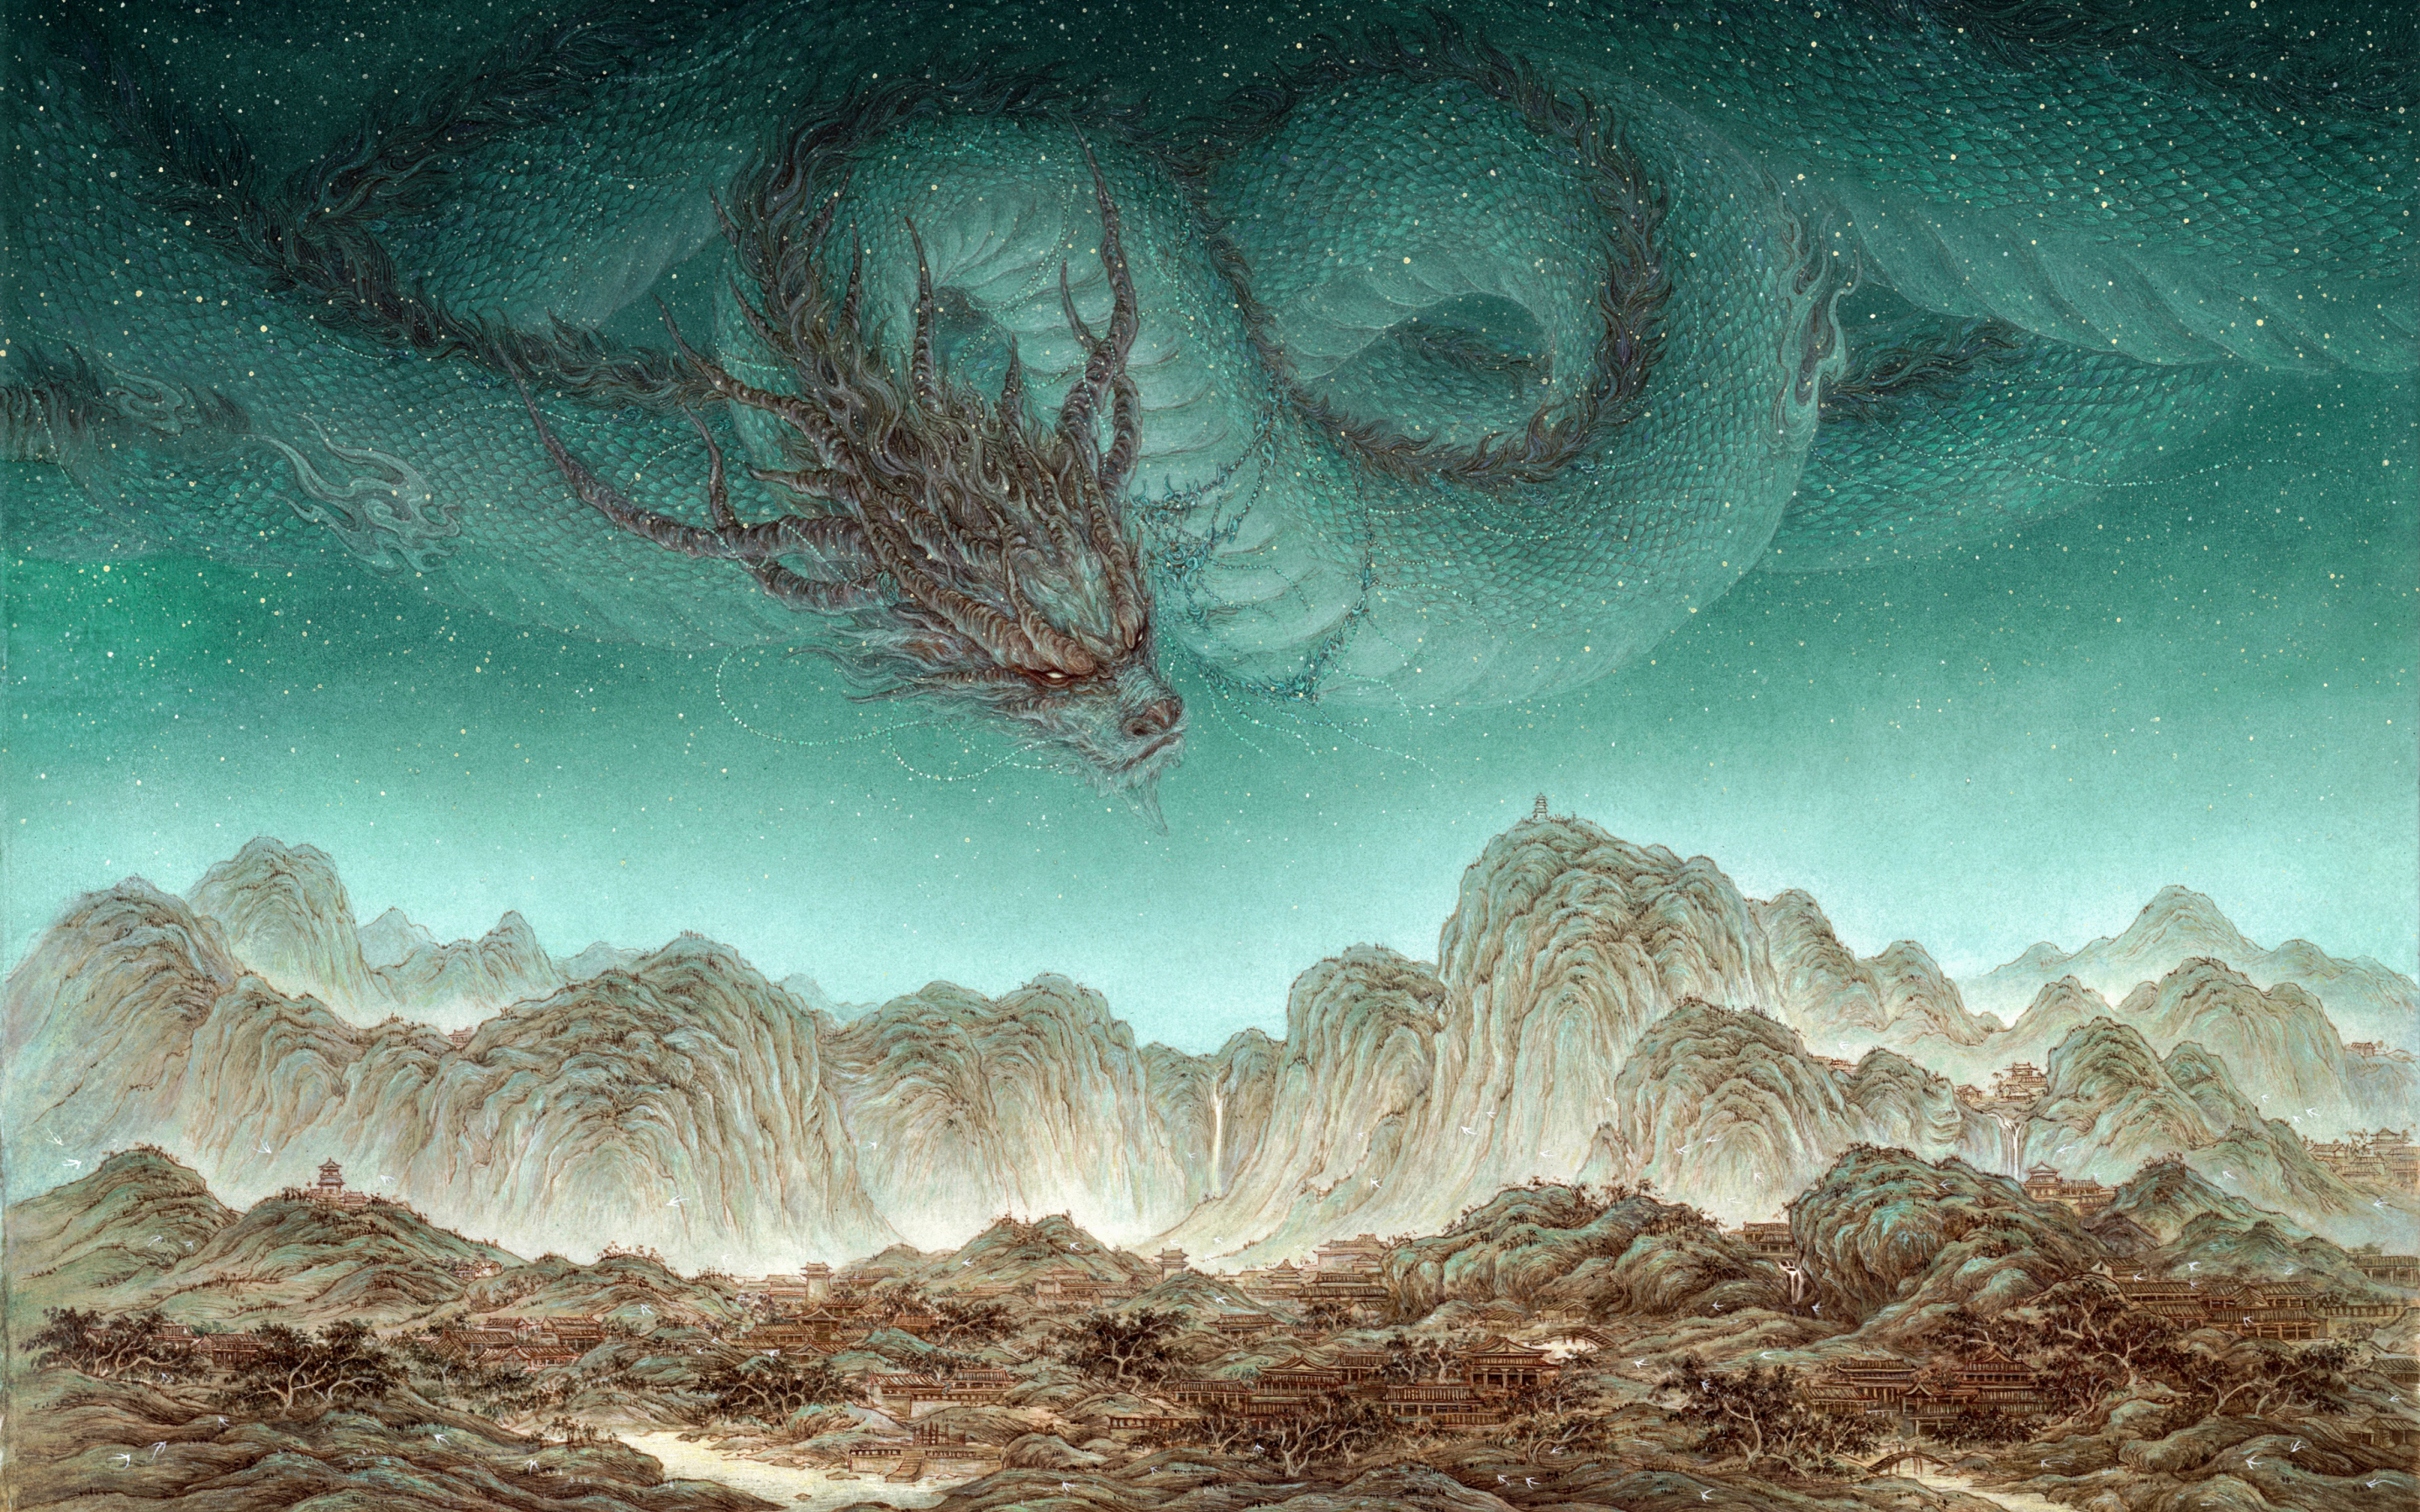 Dragon in sky, AI art, fantasy, 2880x1800 wallpaper